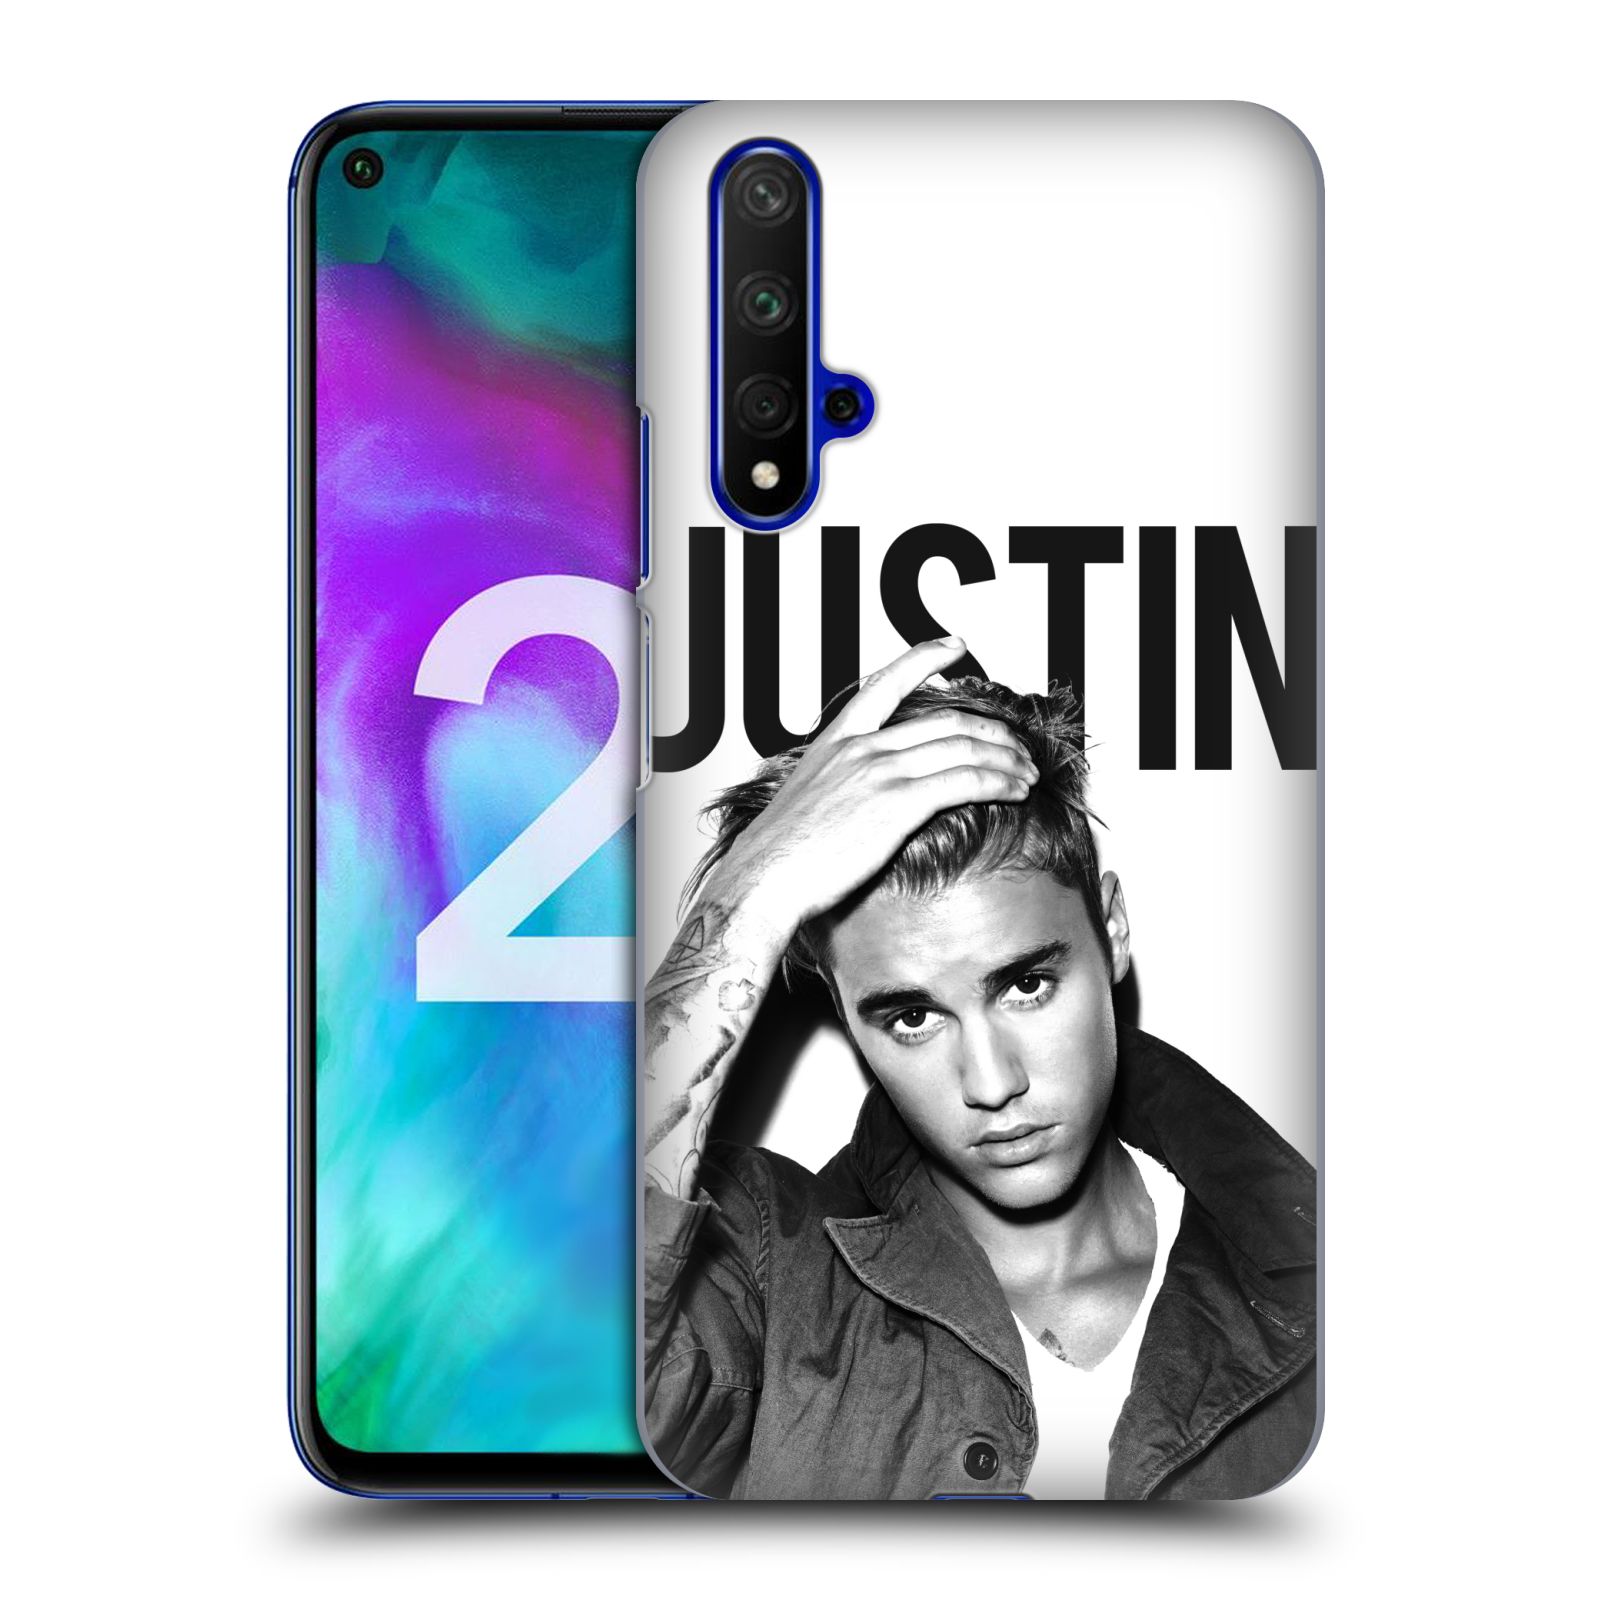 Pouzdro na mobil Honor 20 - HEAD CASE - Justin Bieber foto Purpose černá a bílá